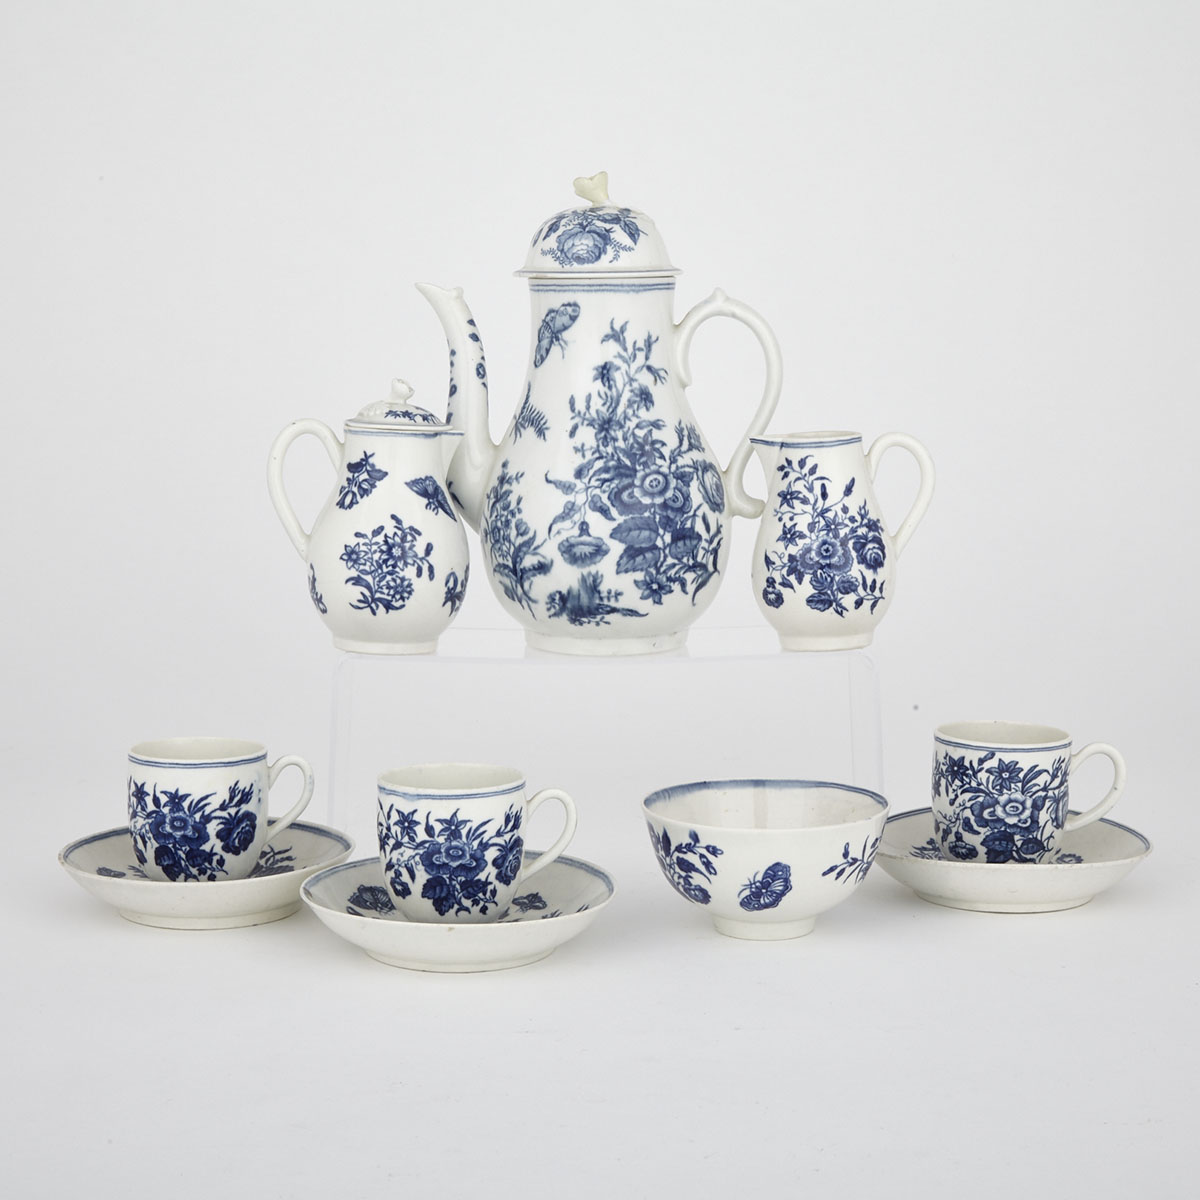 Worcester ‘Three Flowers’ Teawares, c.1775